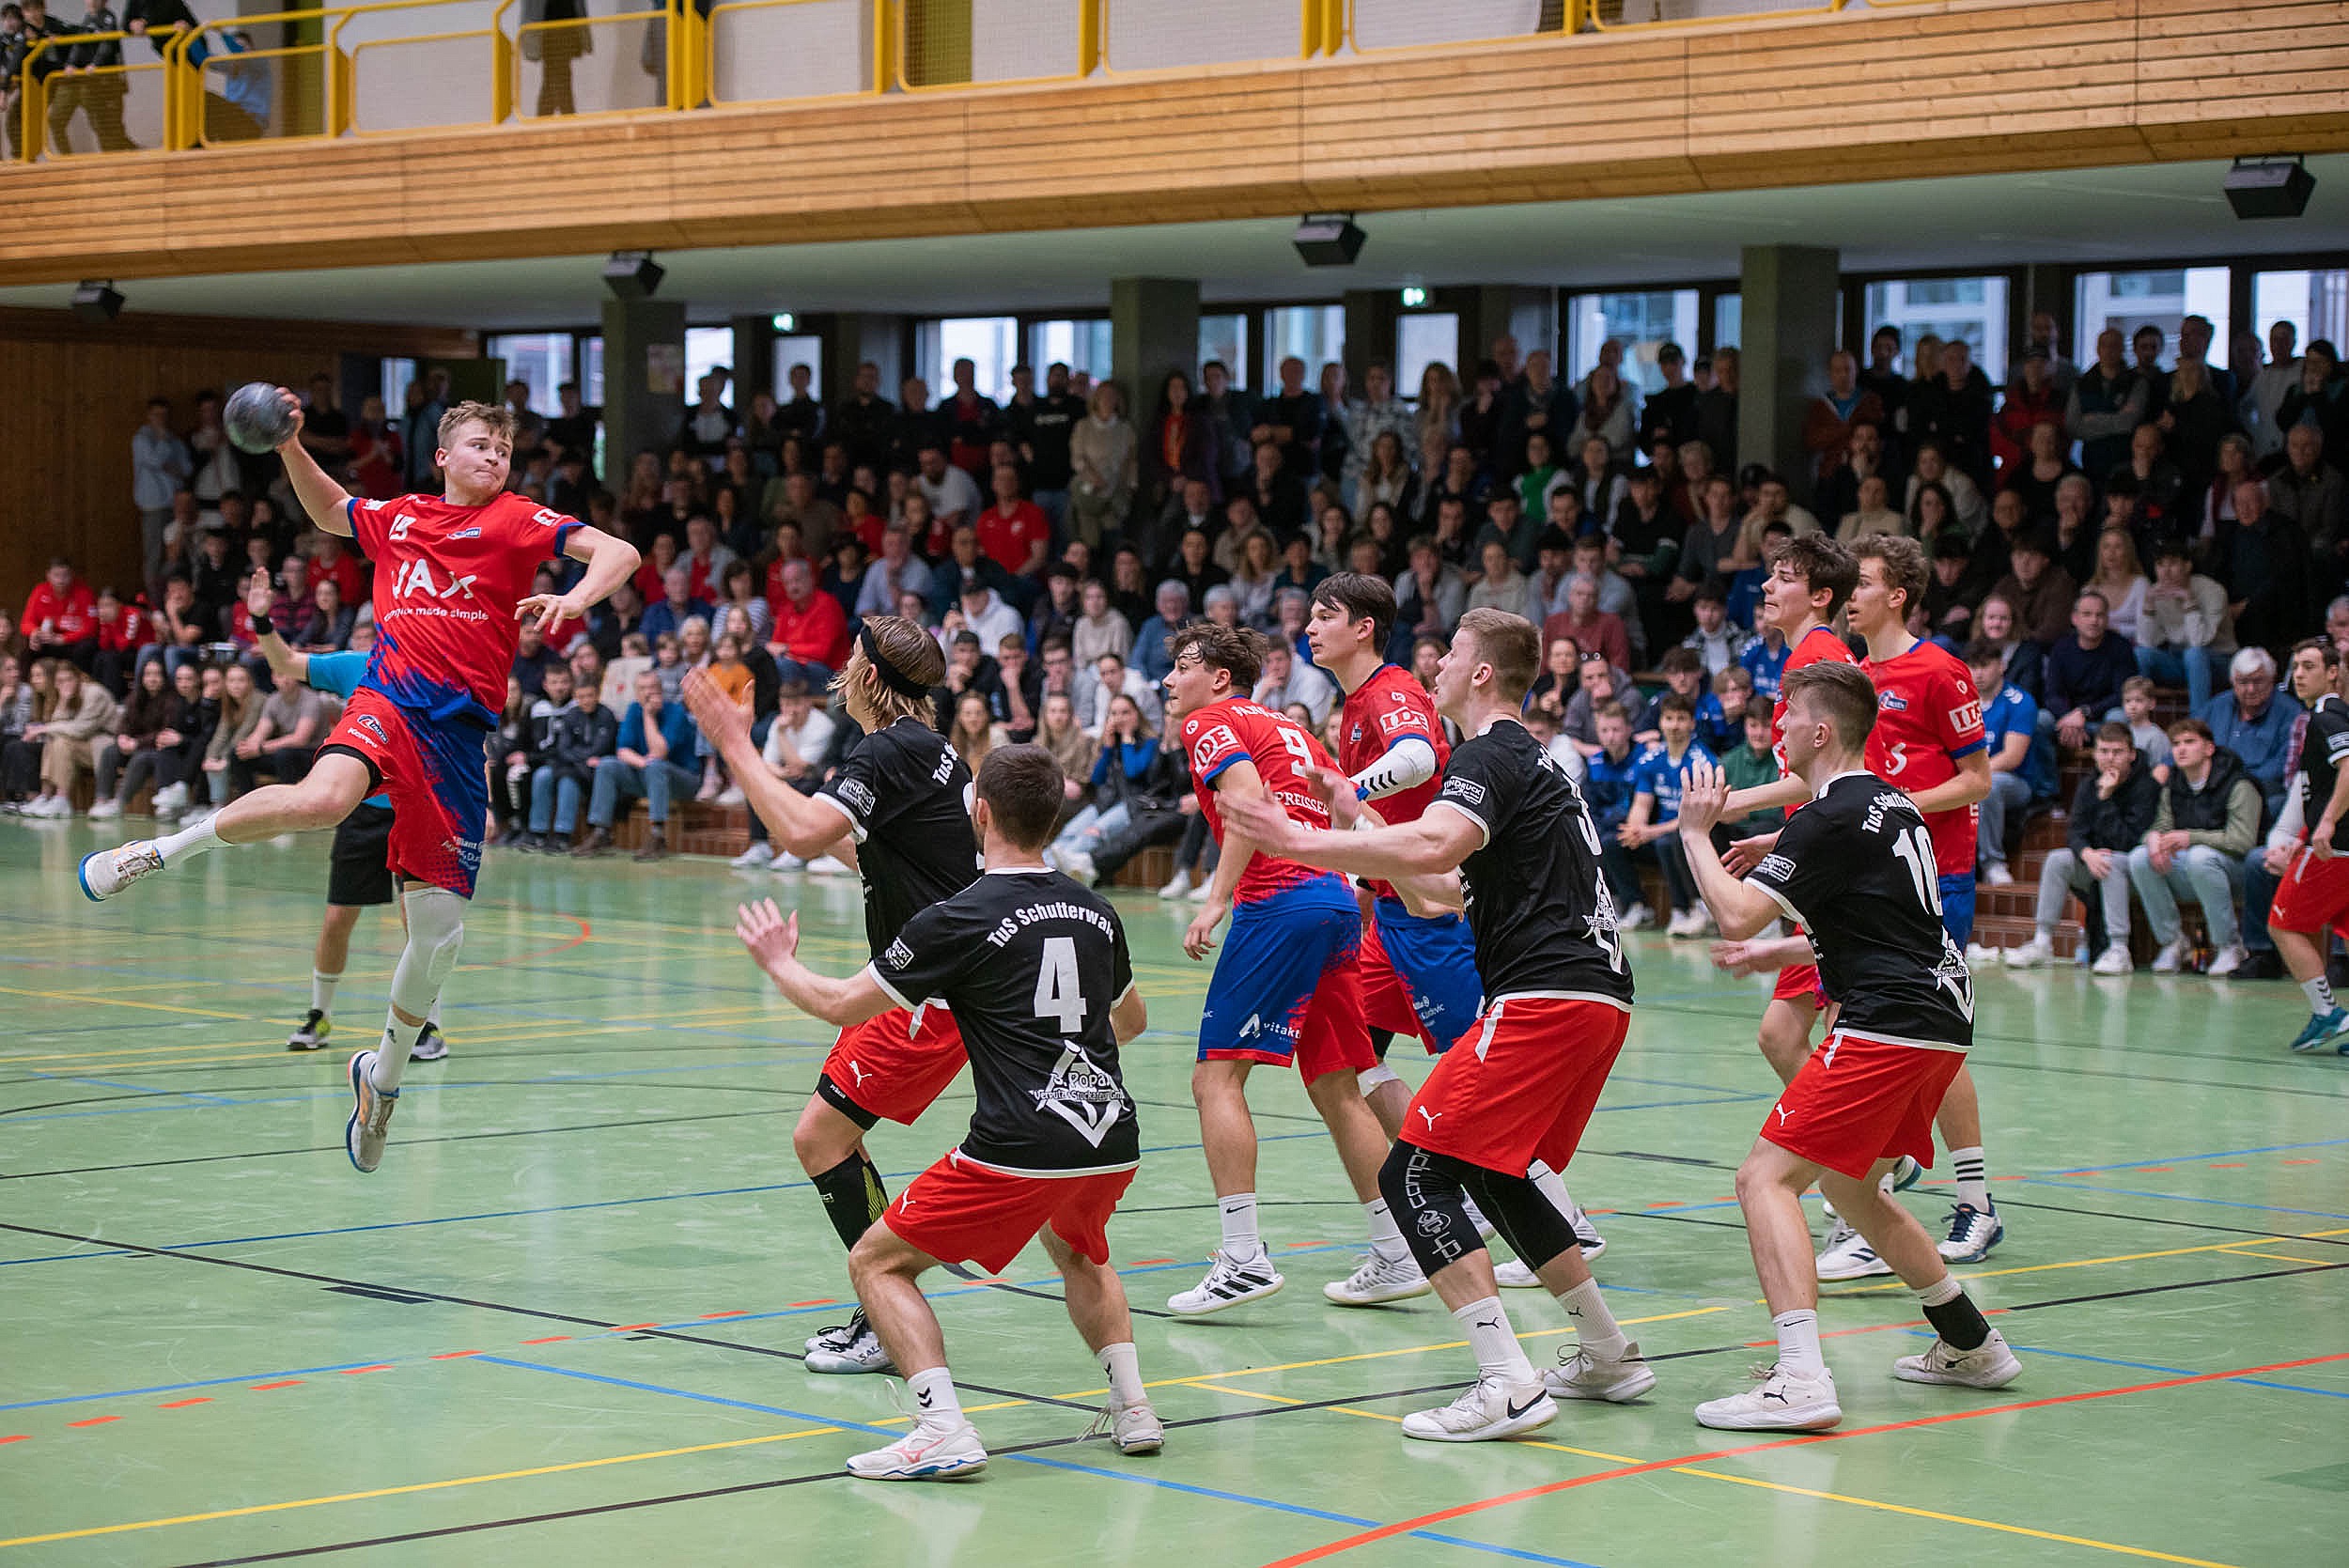 U19 - Qualifikation zur Jugendbundesliga am 1. Mai in Neuhausen